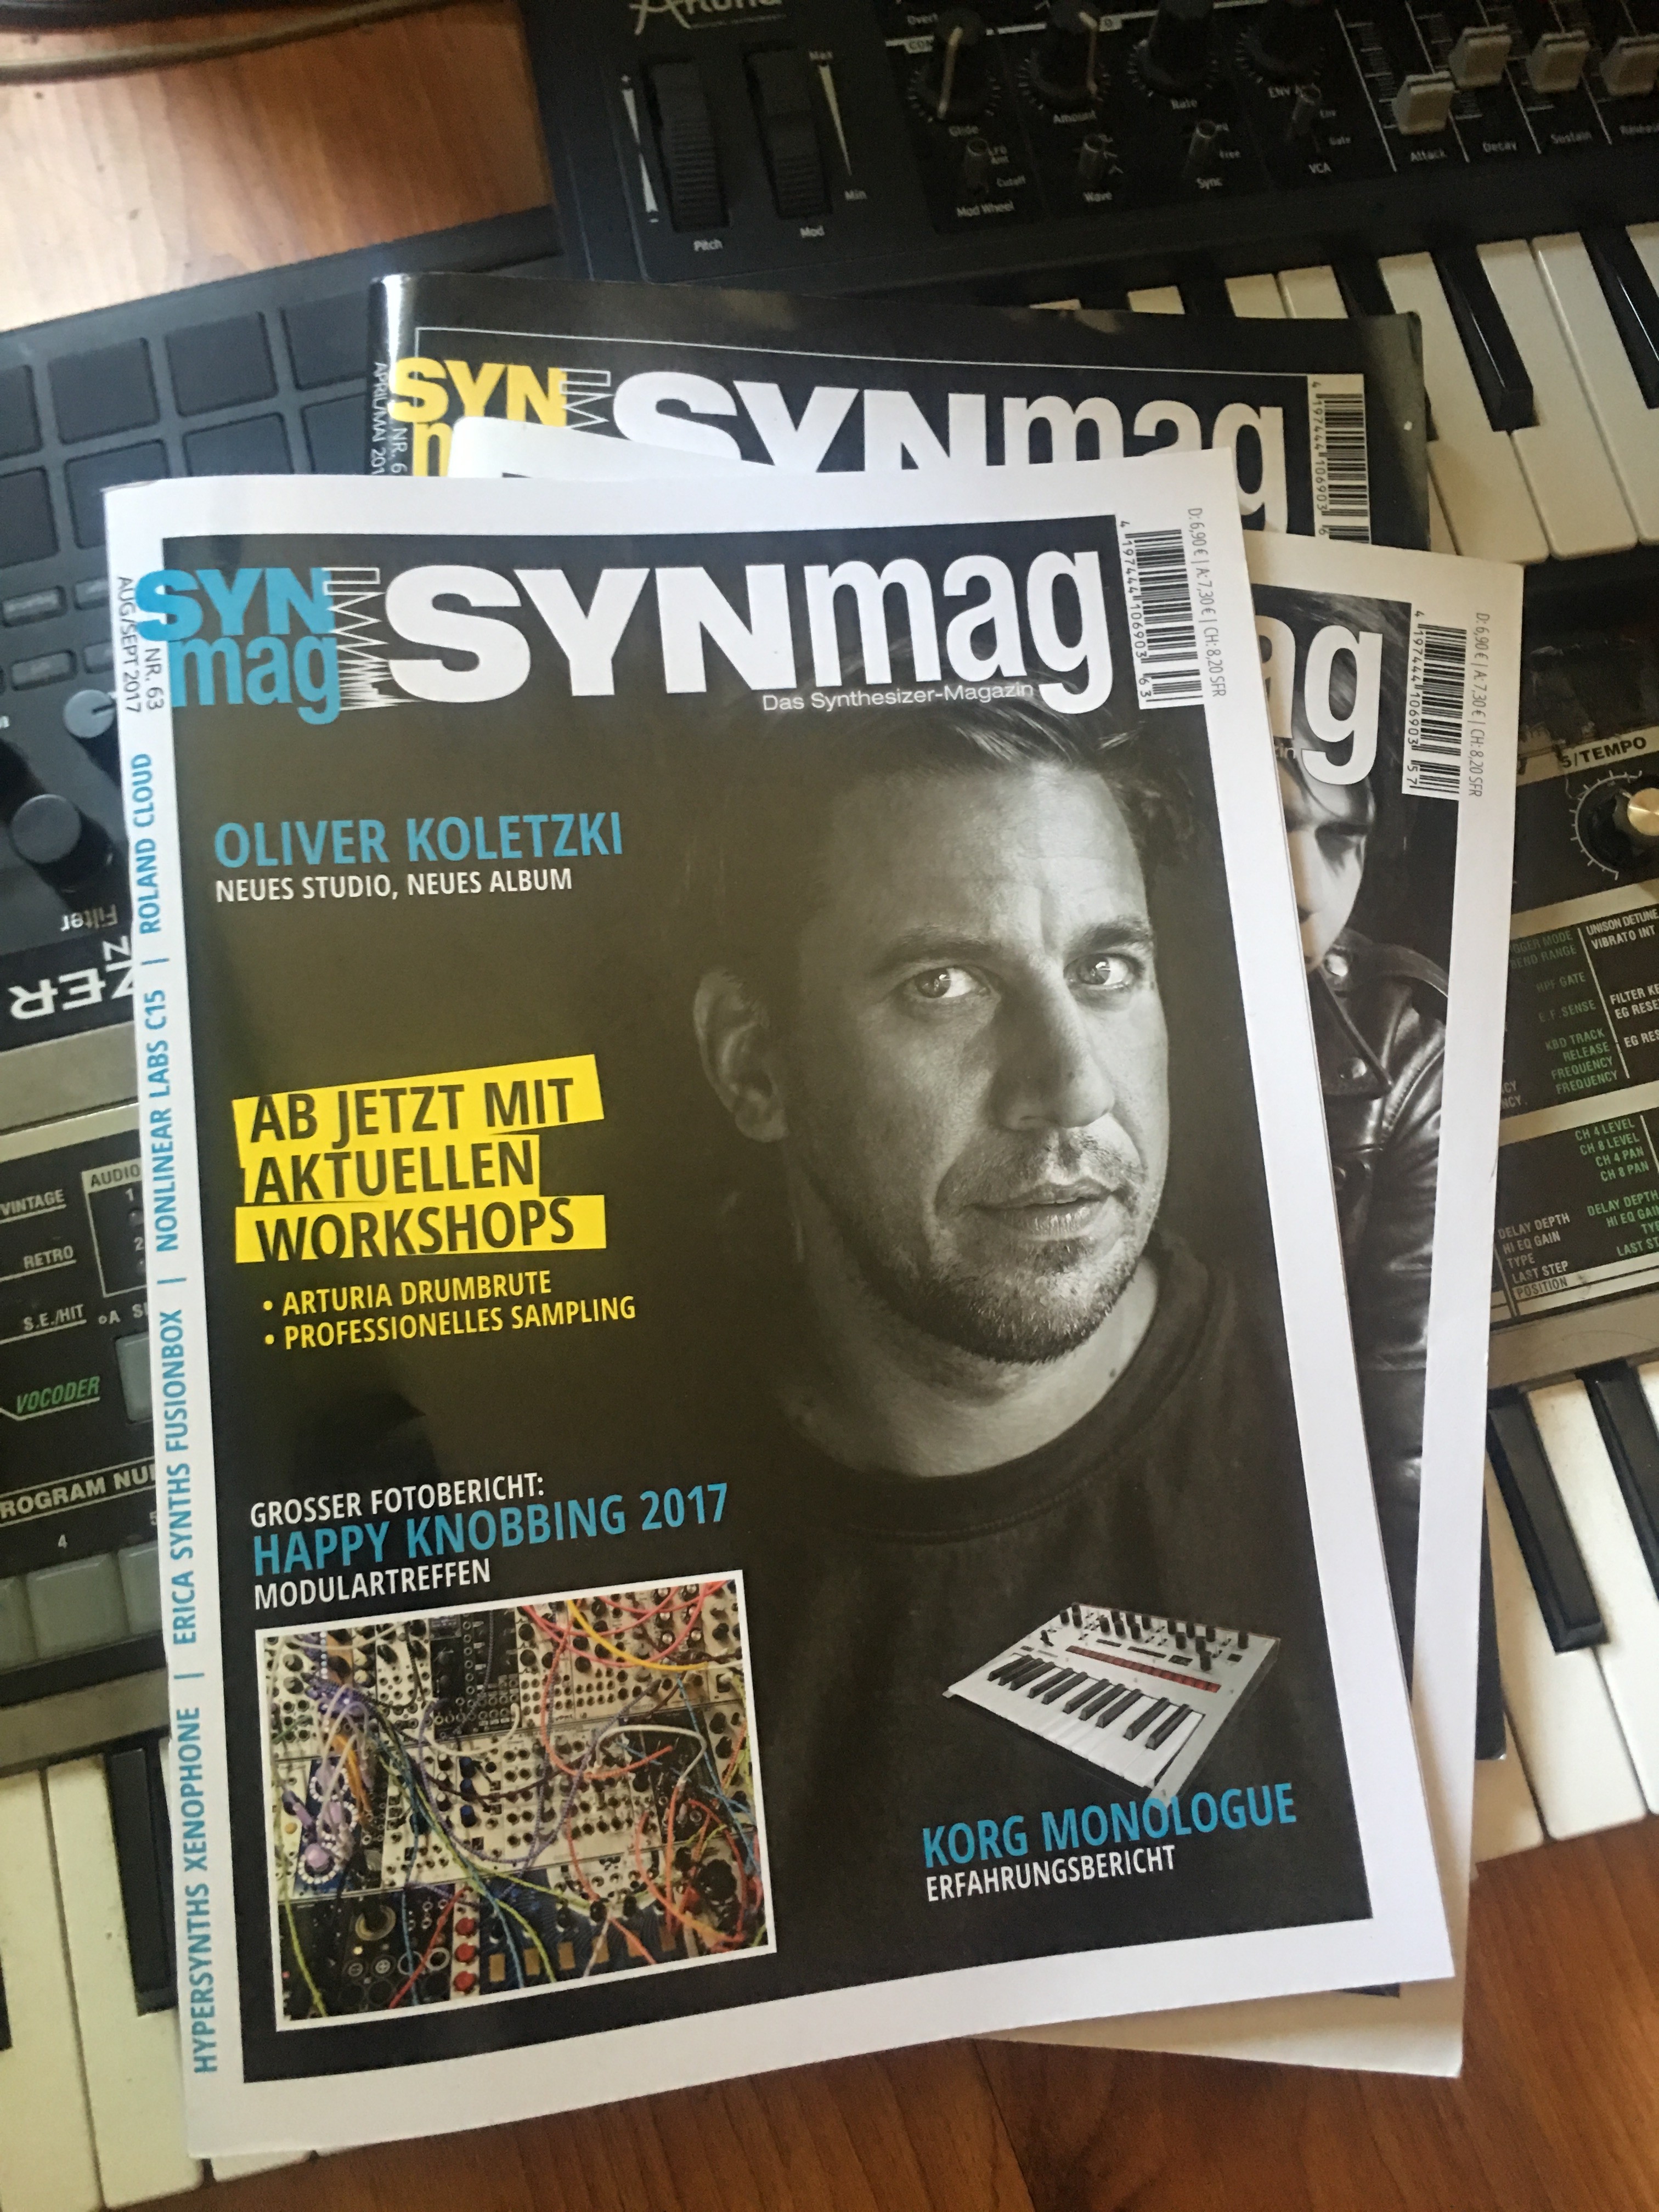 Synmag 63 Das Synthesizer-magazin